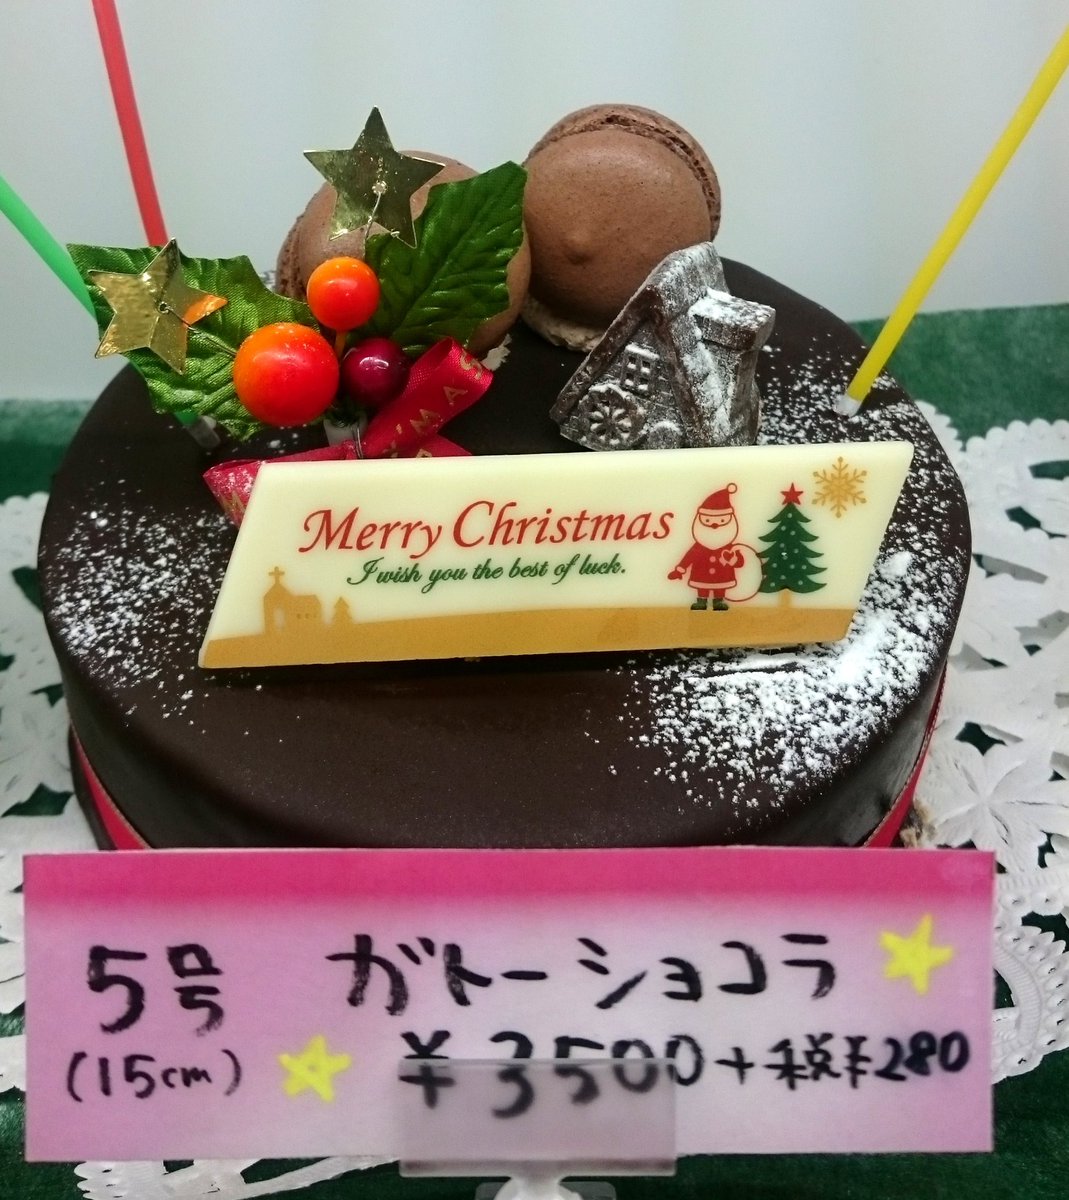 洋菓子のヴェール クリスマスケーキご予約受付中 22日まで 生クリーム 生チョコ バターチョコの3種類 大きさは4号 10号の7種類からお選びいただけます クリスマスケーキ クリスマス ケーキ屋さん